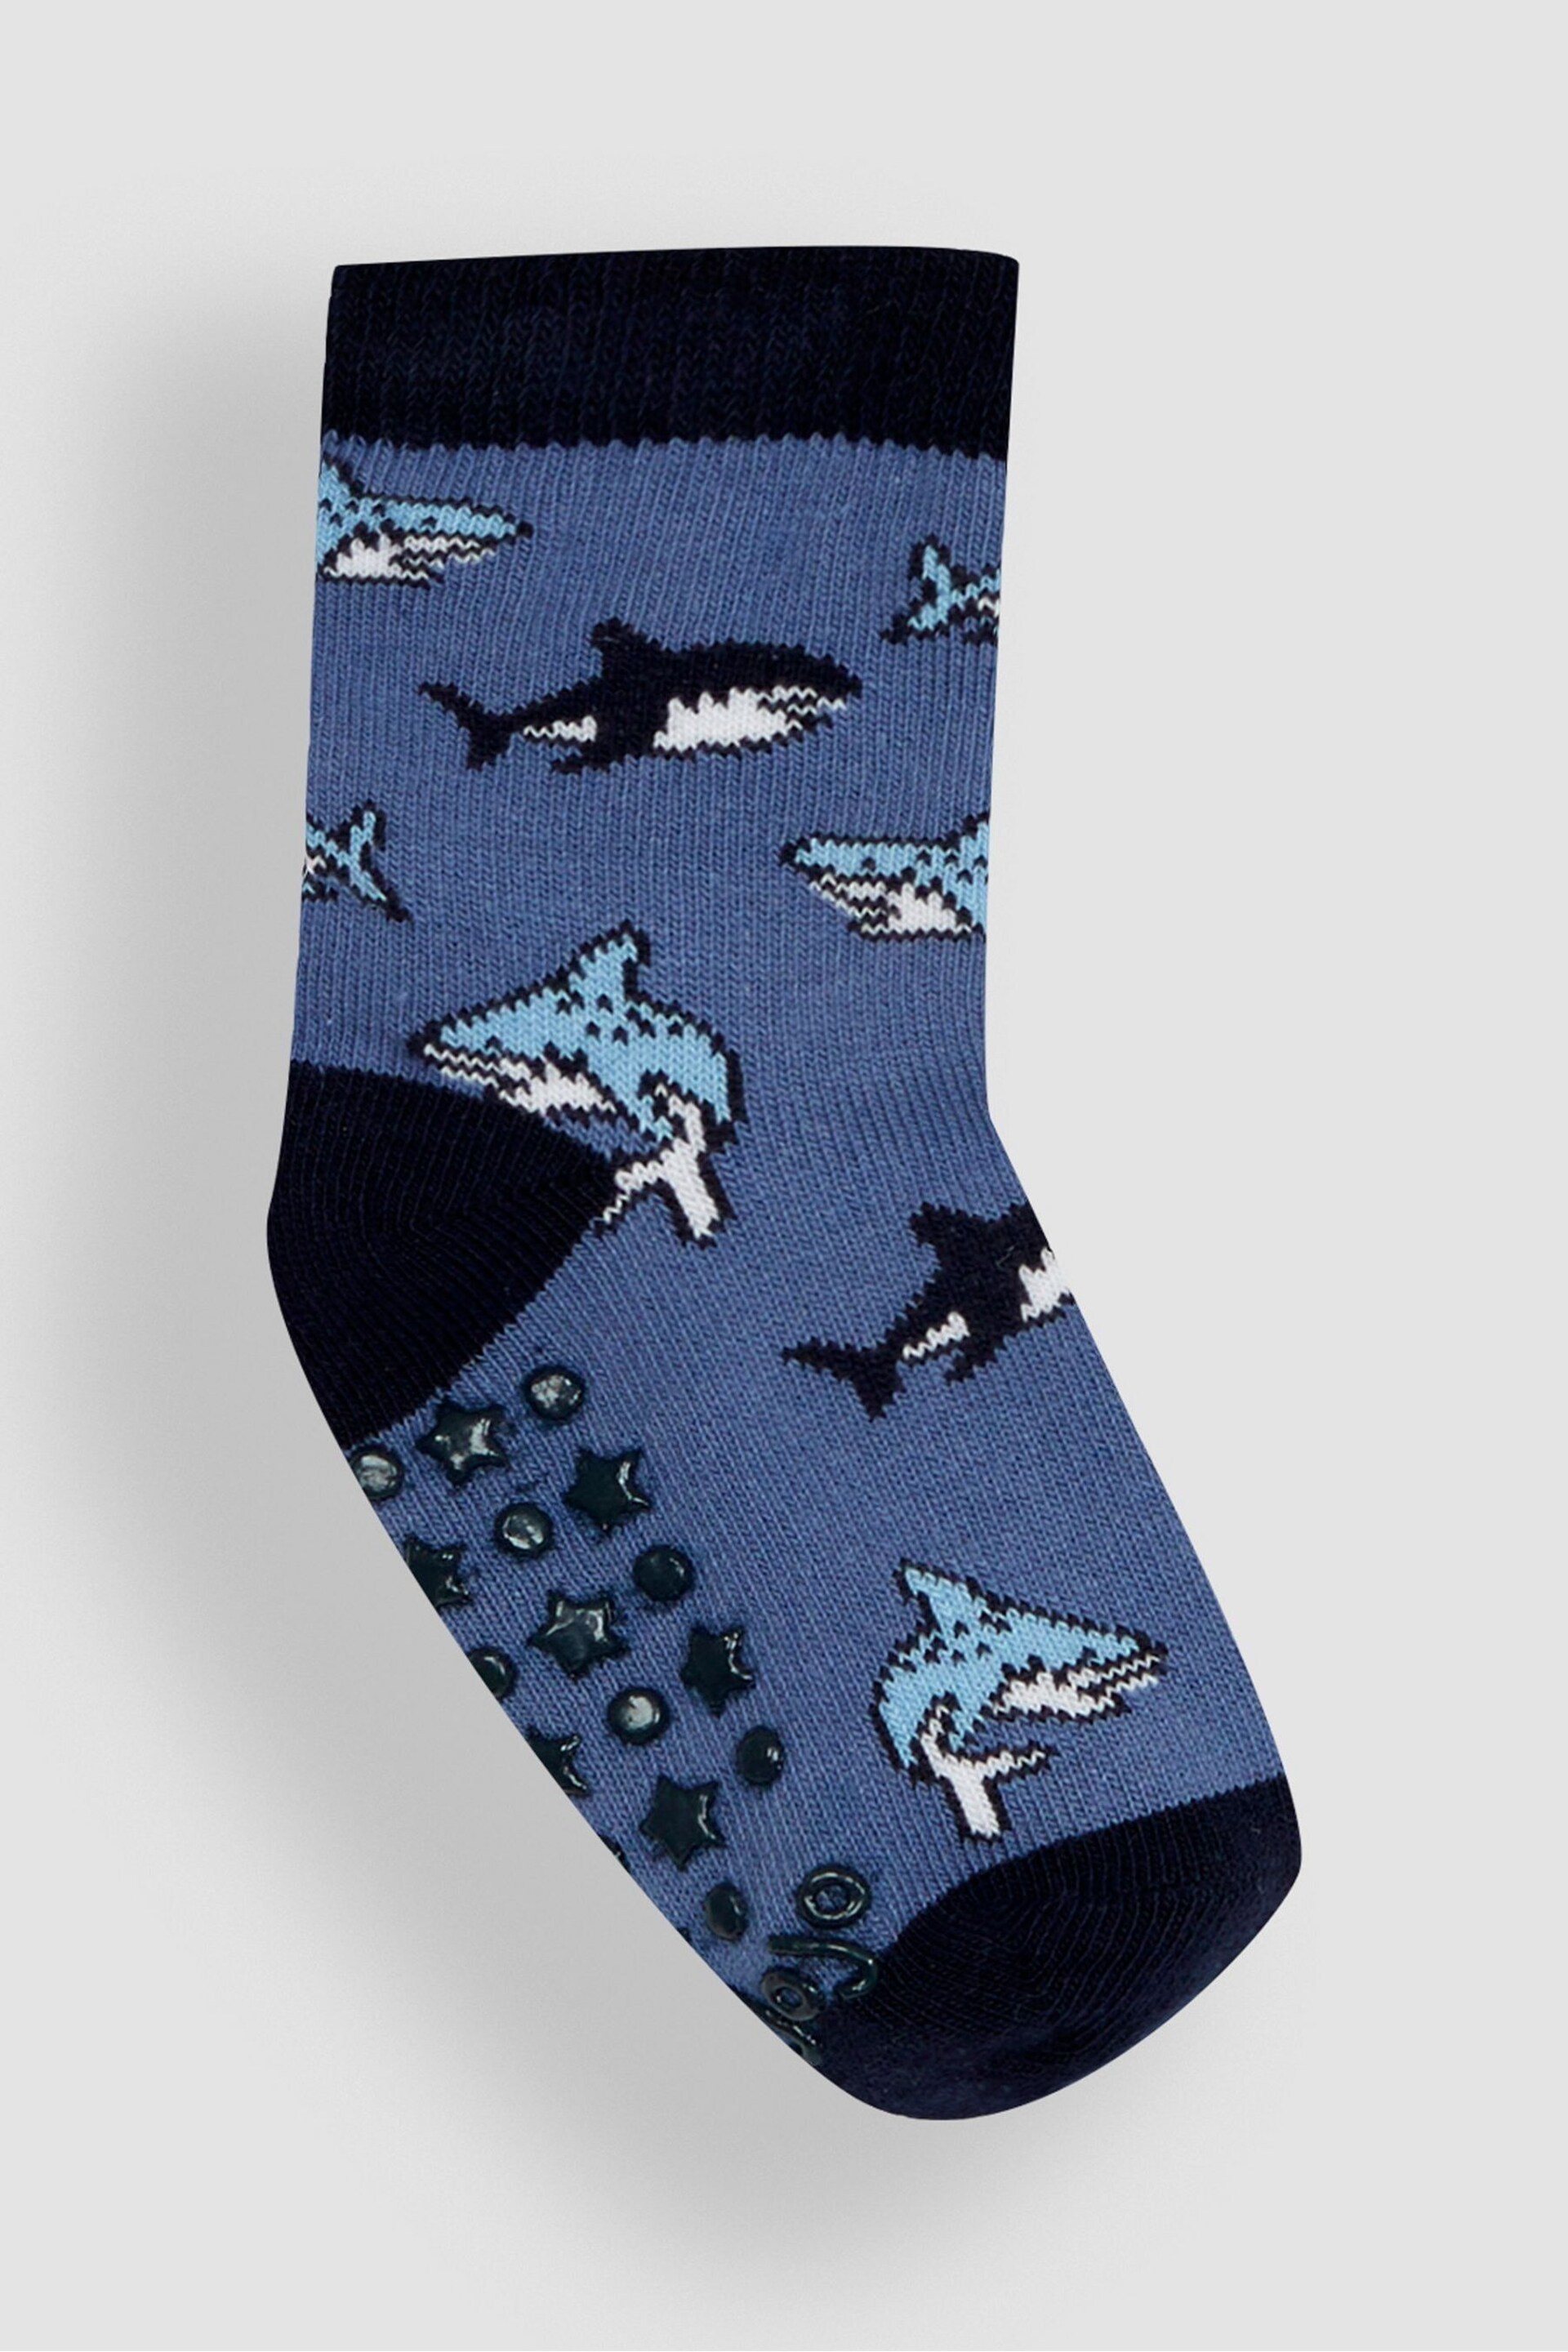 JoJo Maman Bébé Navy 3-Pack Shark Socks - Image 2 of 4